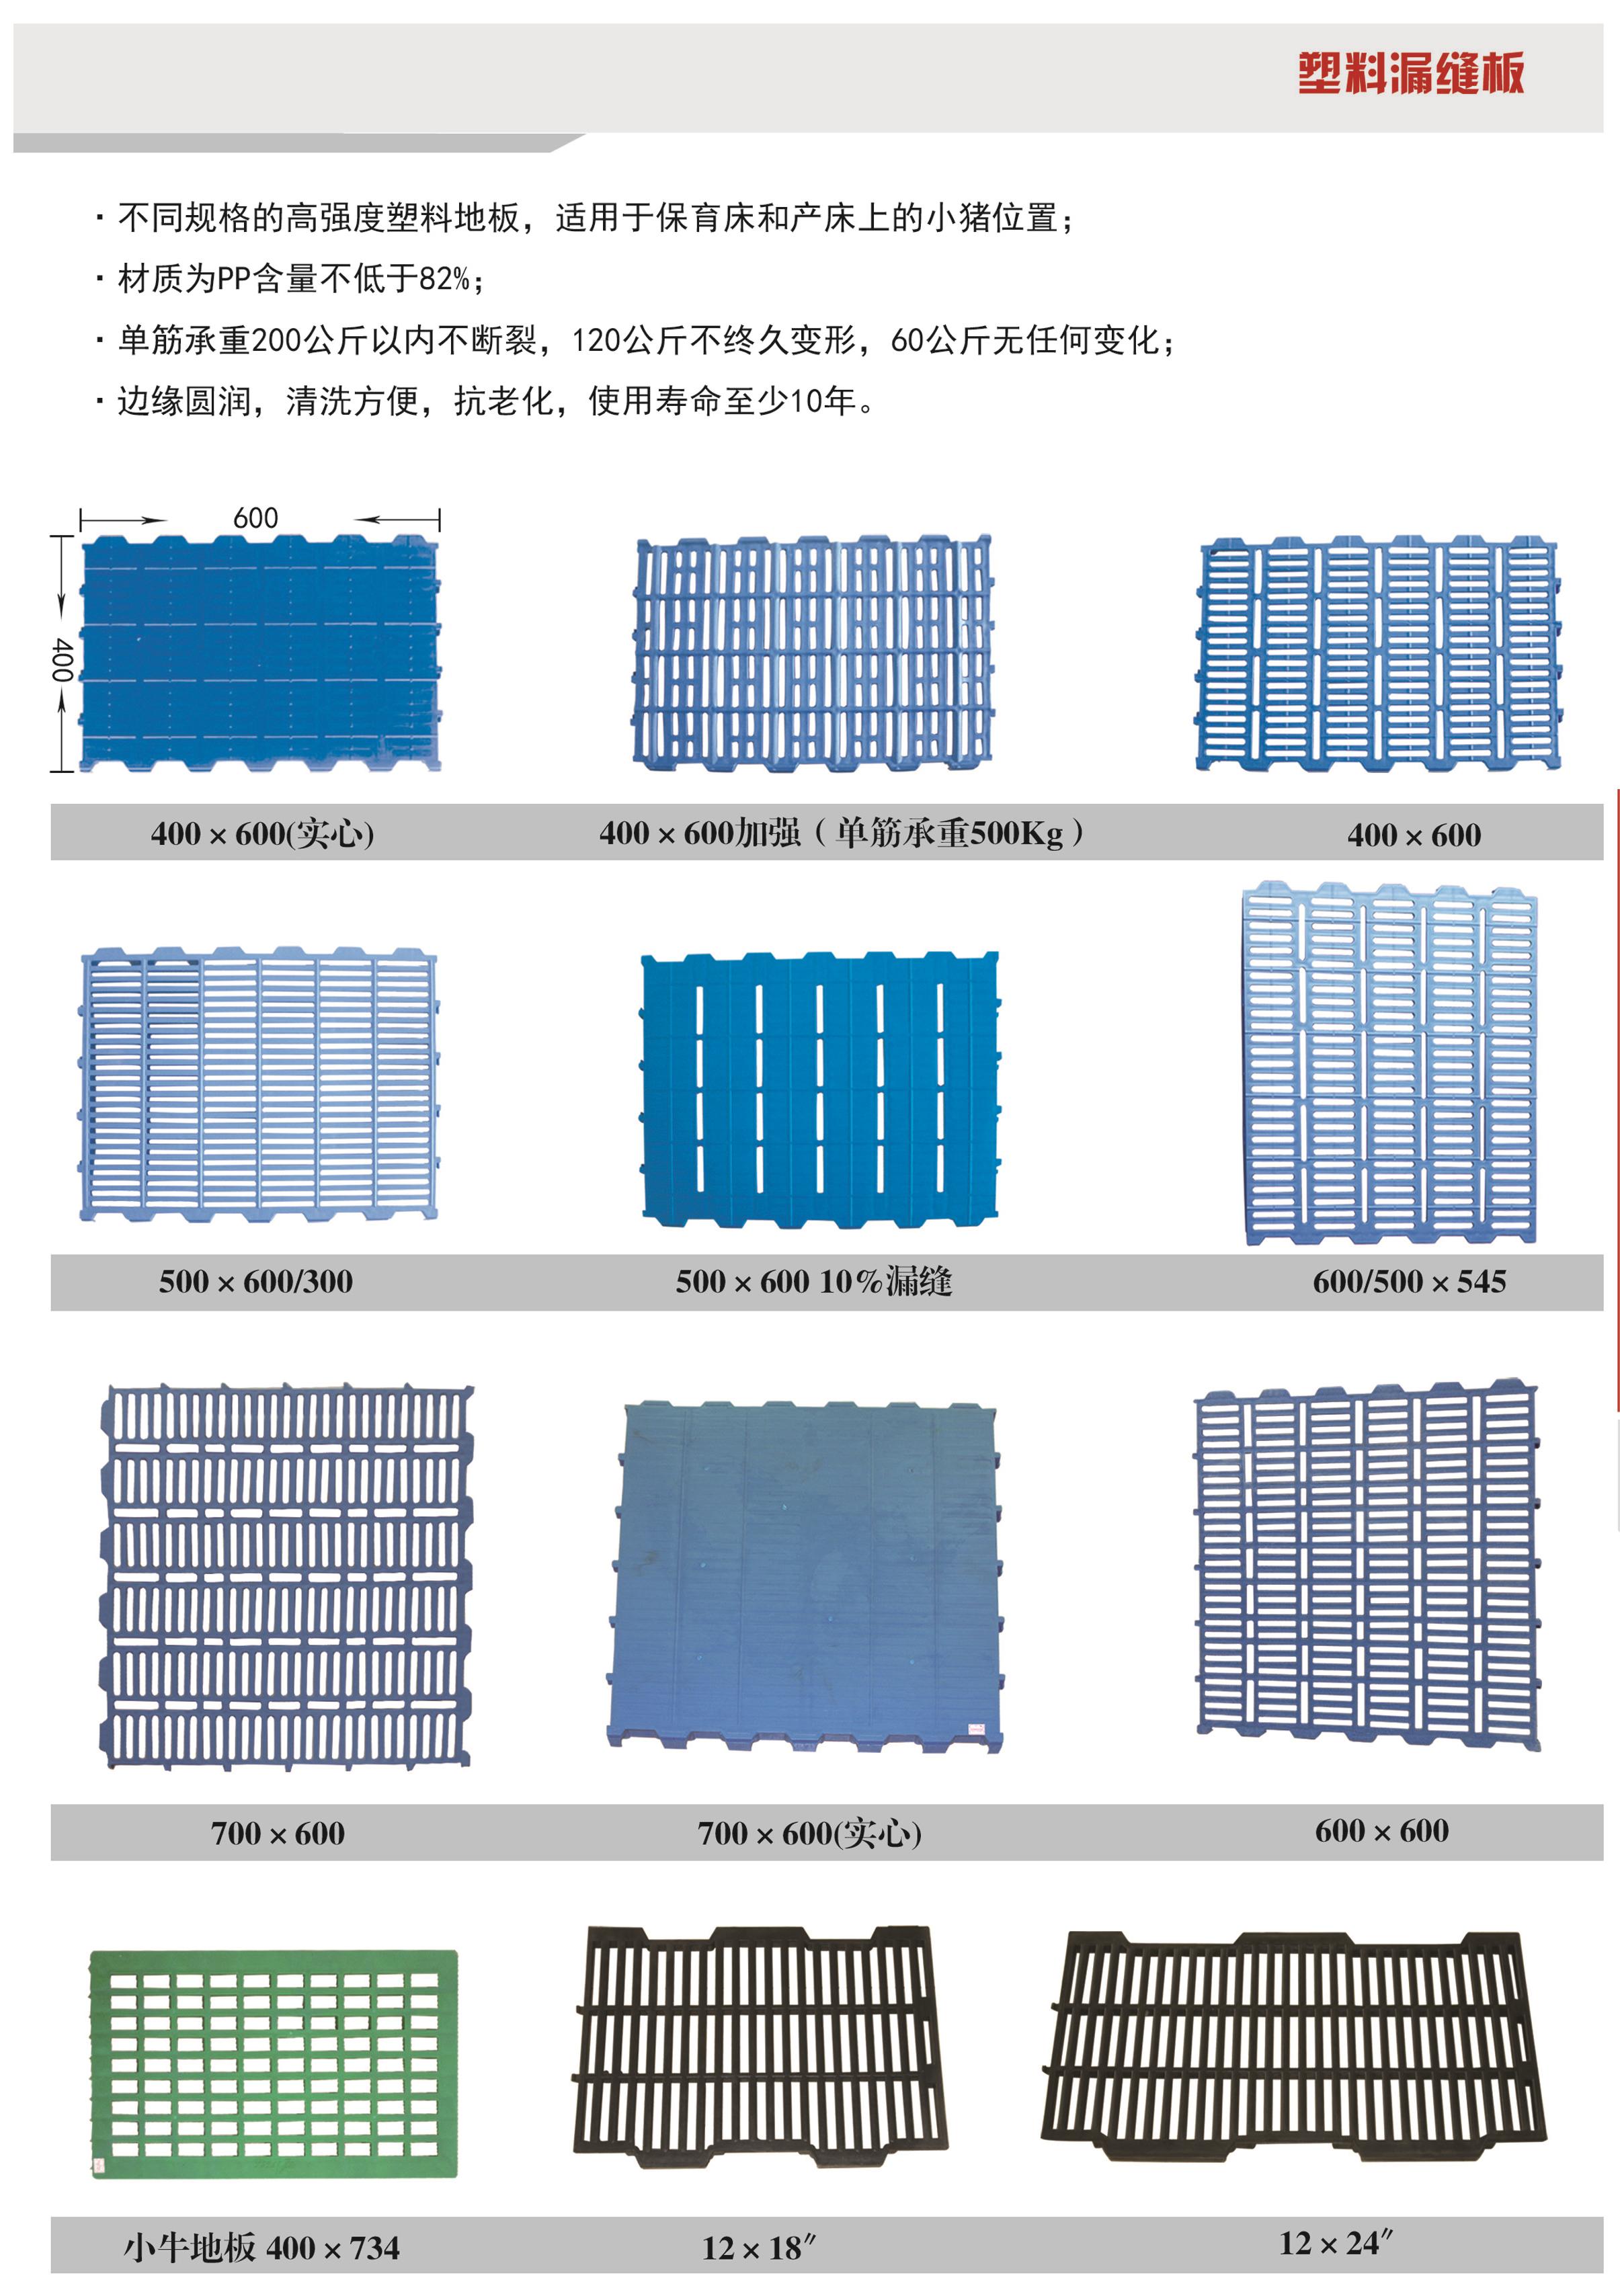 25企业产品篇栏位系统铸铁塑料板副本 拷贝2.jpg